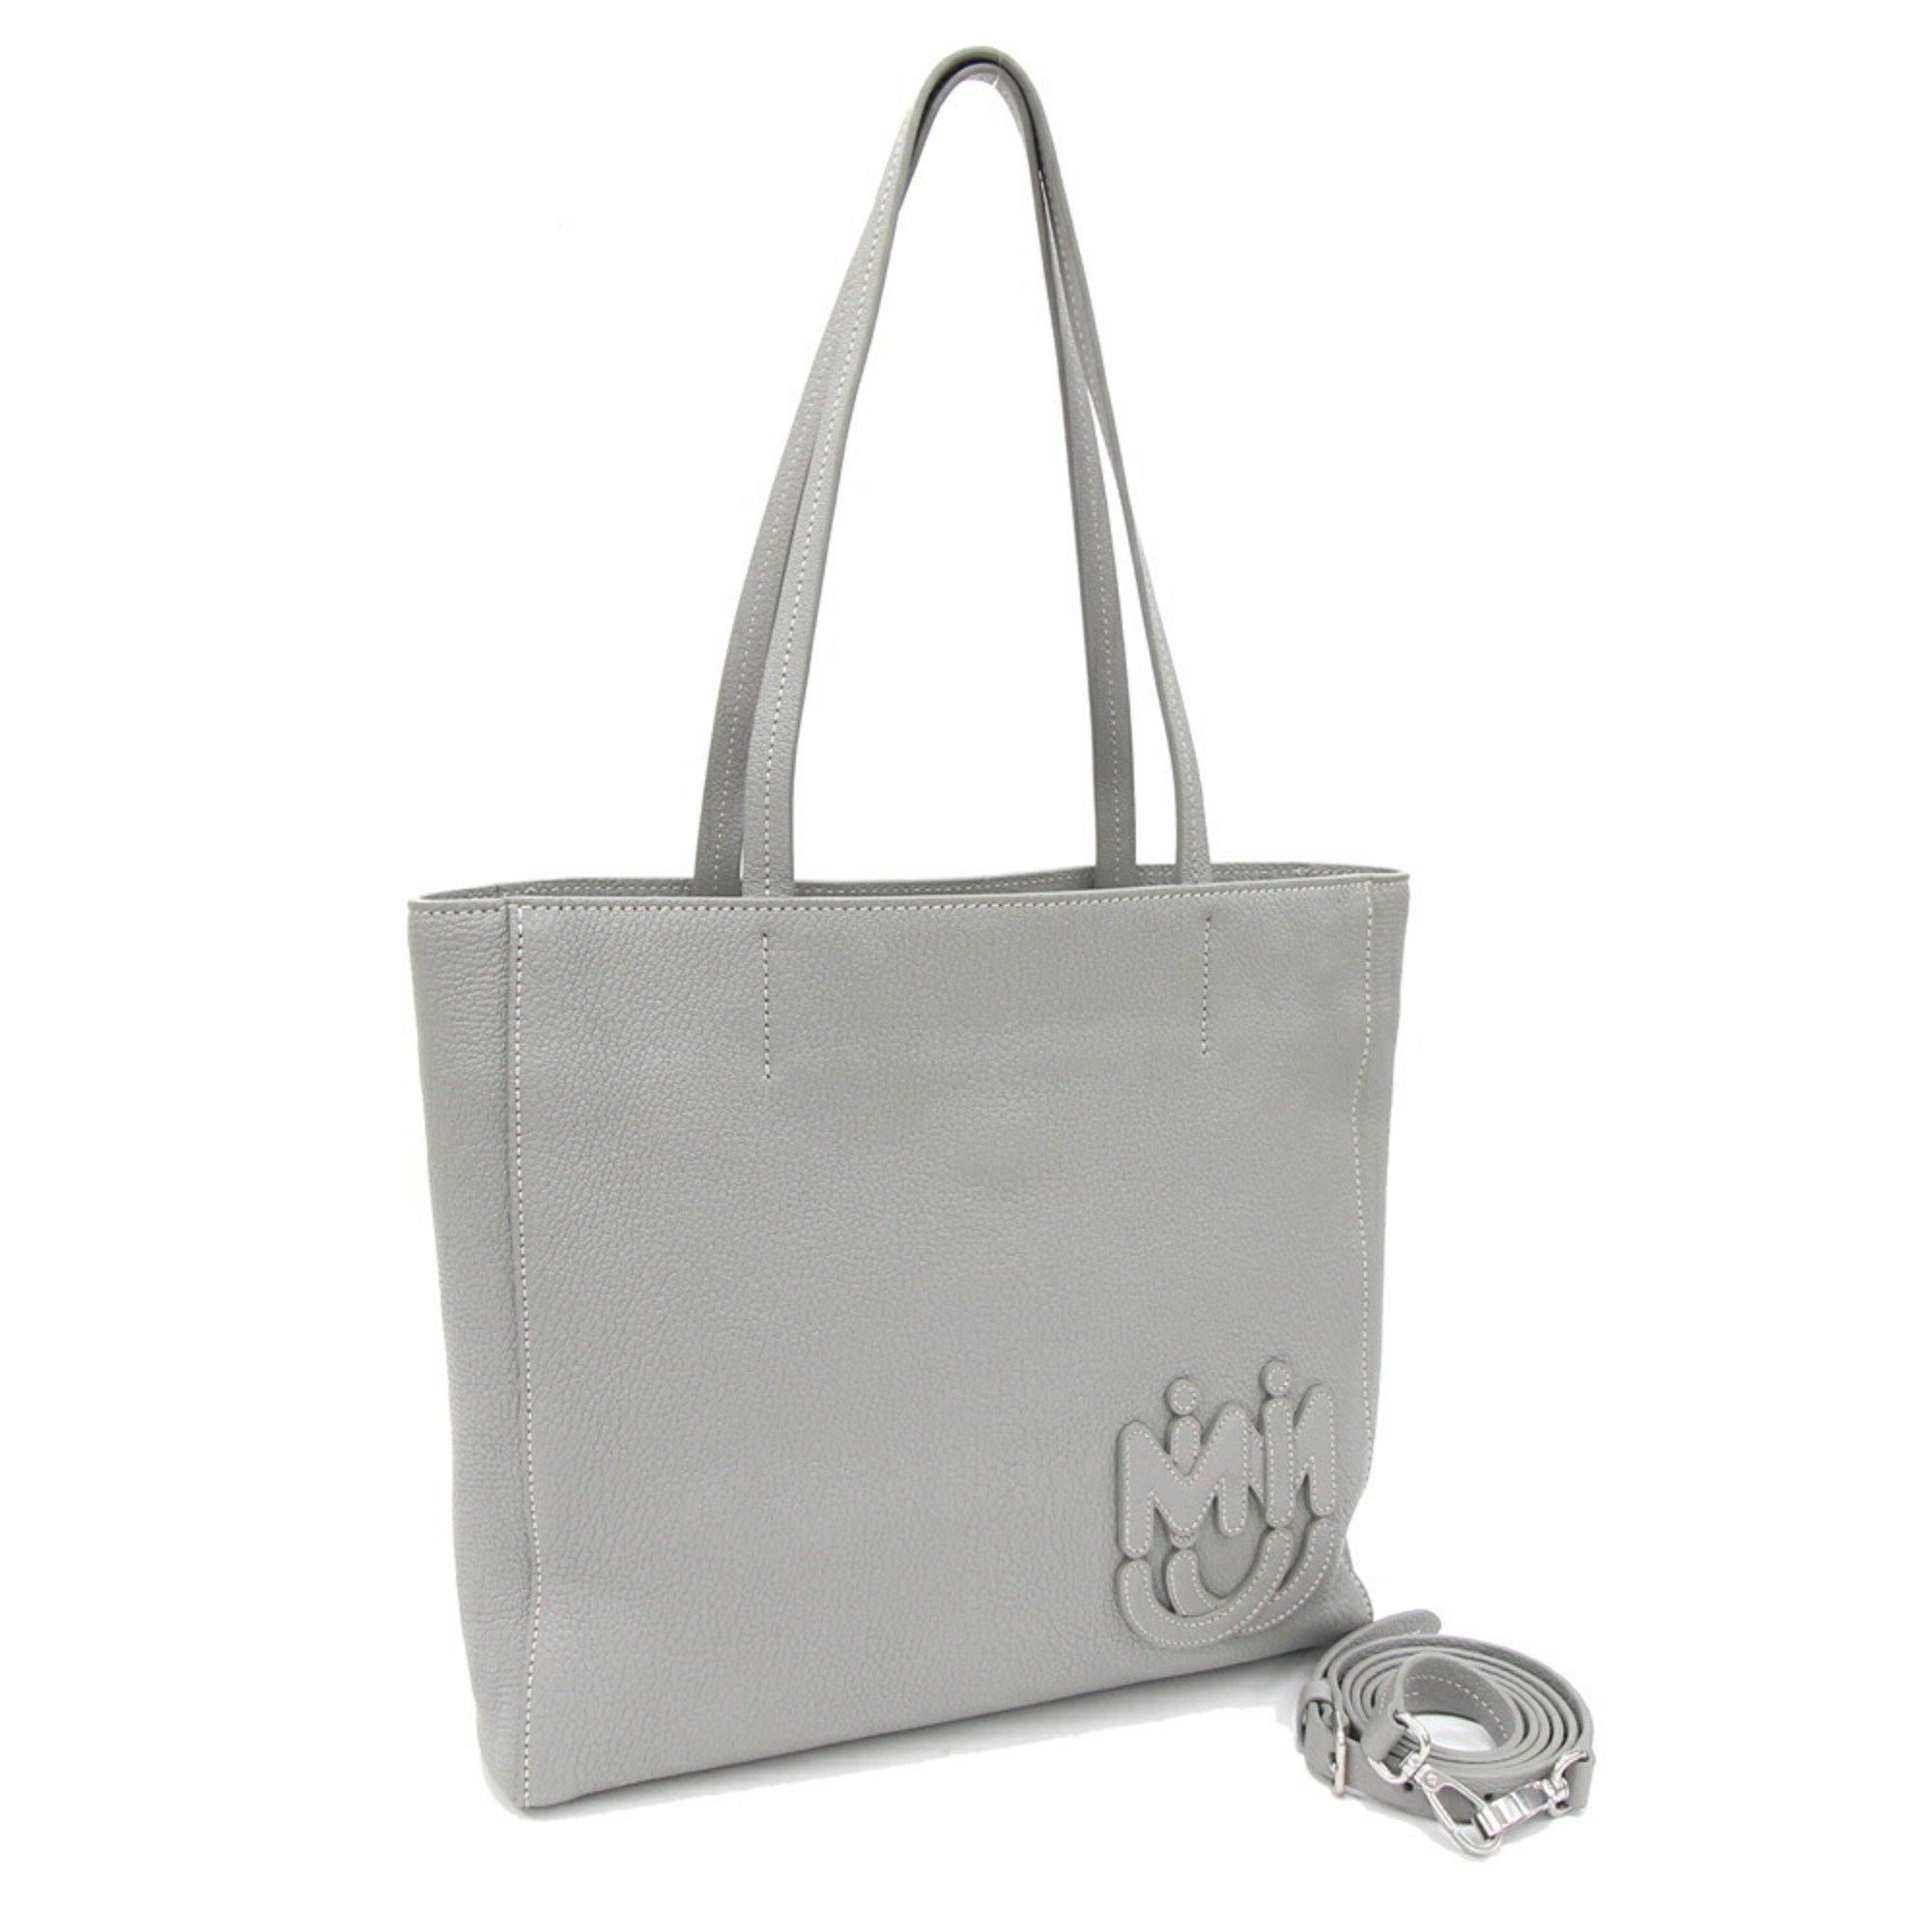 Miu Miu Miu Tote Bag 5BG226 Gray Leather Shoulder Ladies MIUMIU